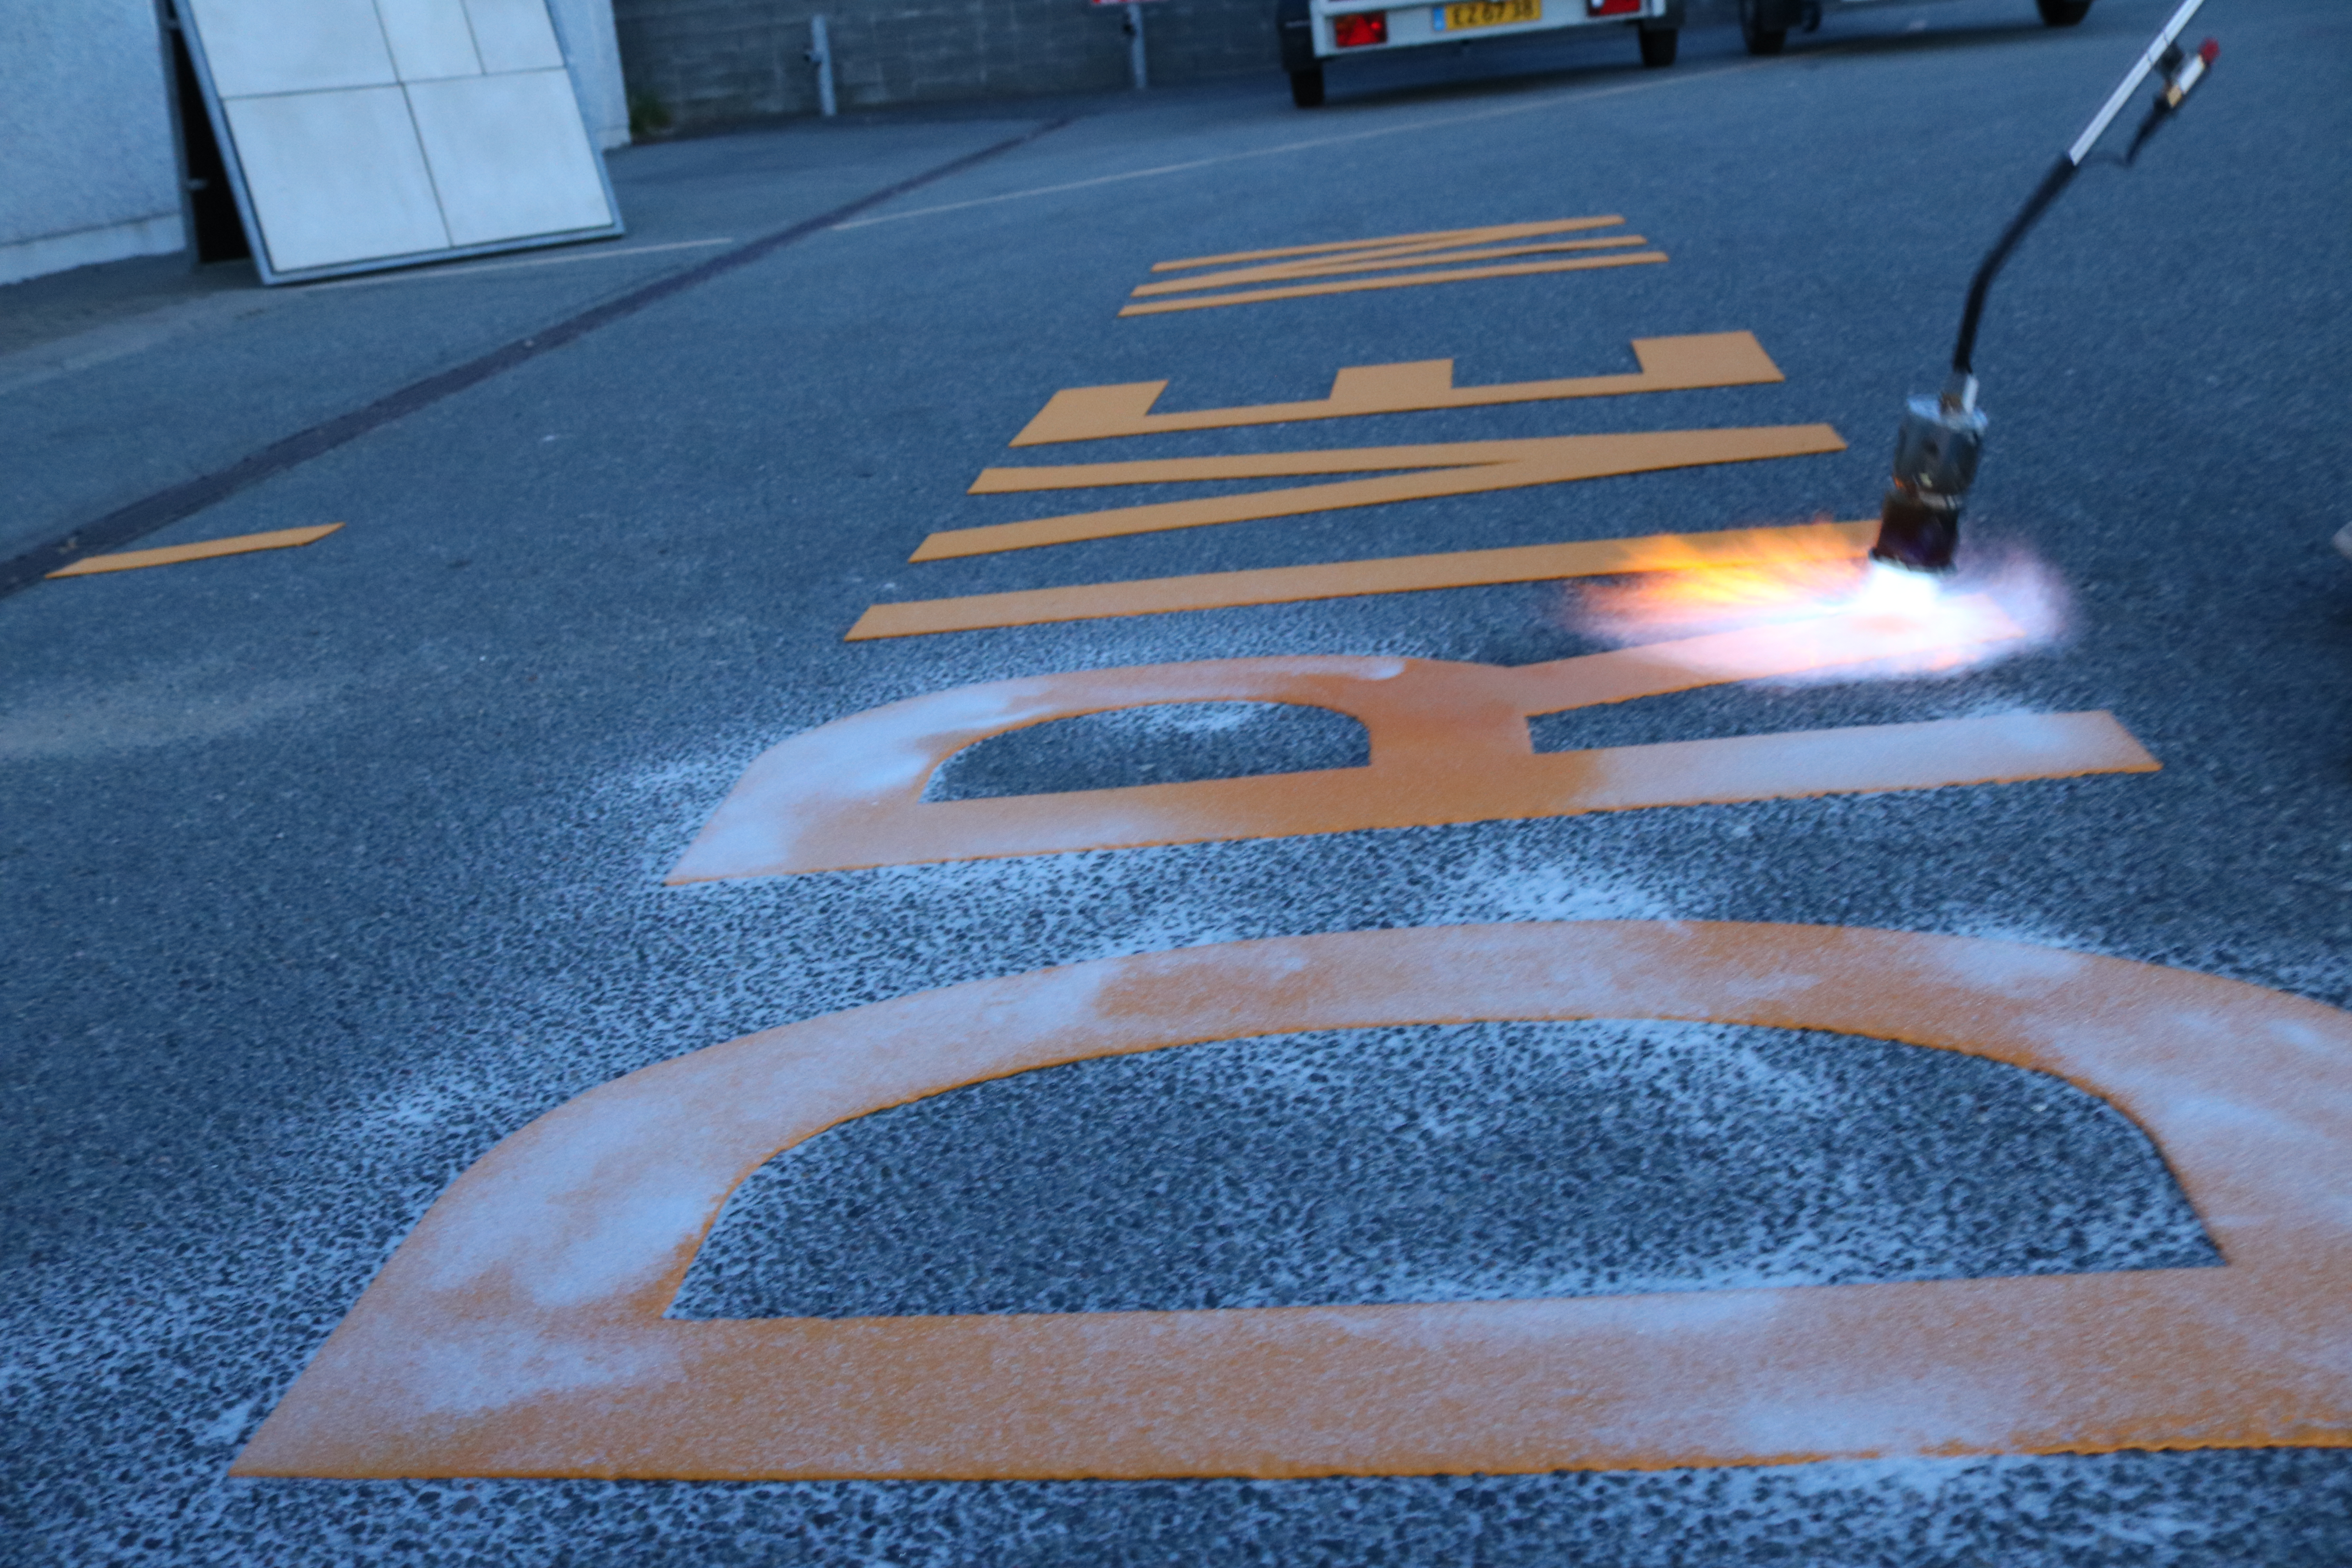 Tekst "DRIVE IN" brændt på asfalt